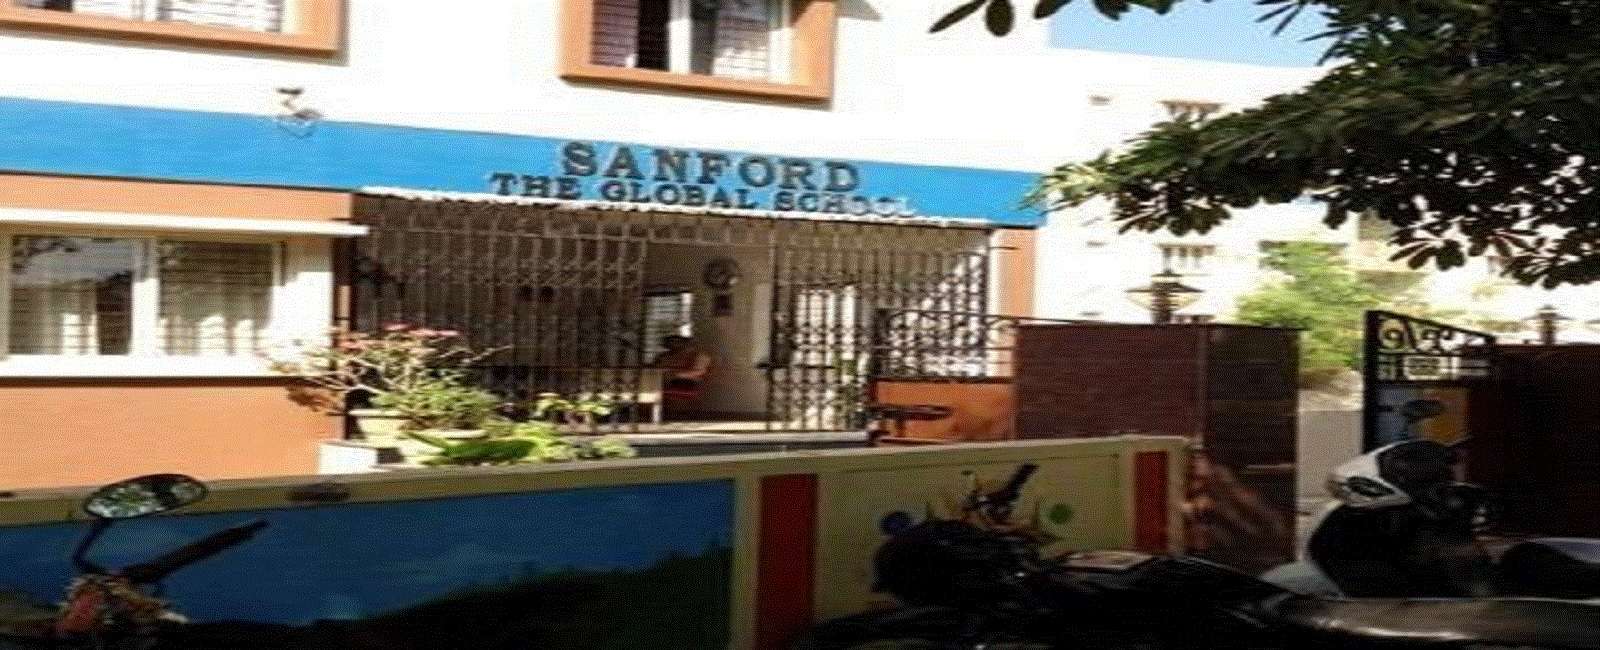 Sanford The Global School,  Miyapur